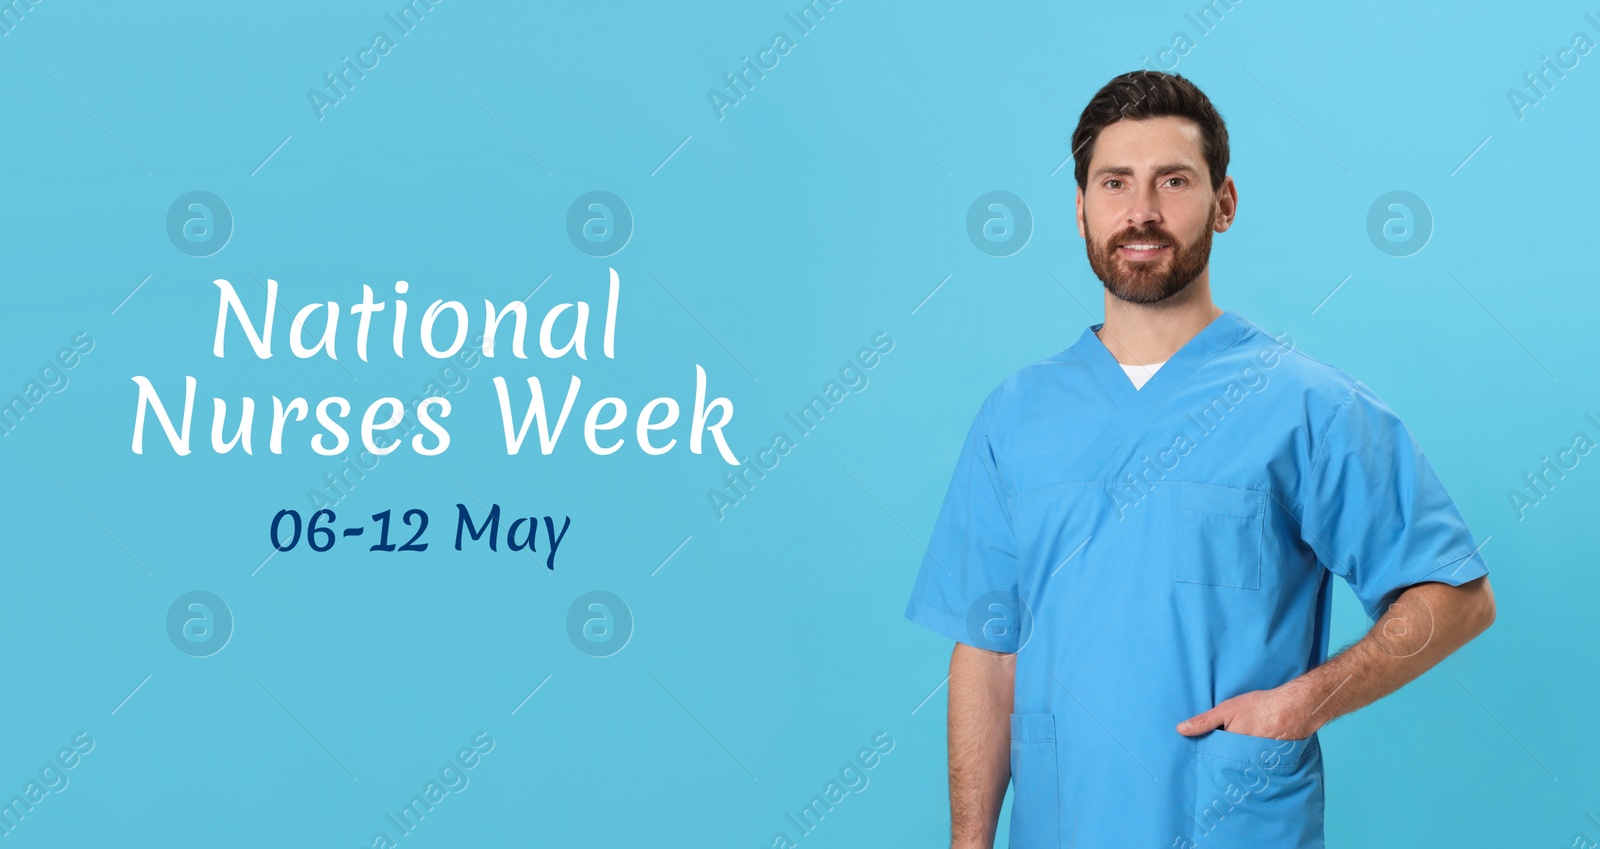 Image of National Nurses Week, May 06-12. Nurse in medical uniform on light blue background, banner design